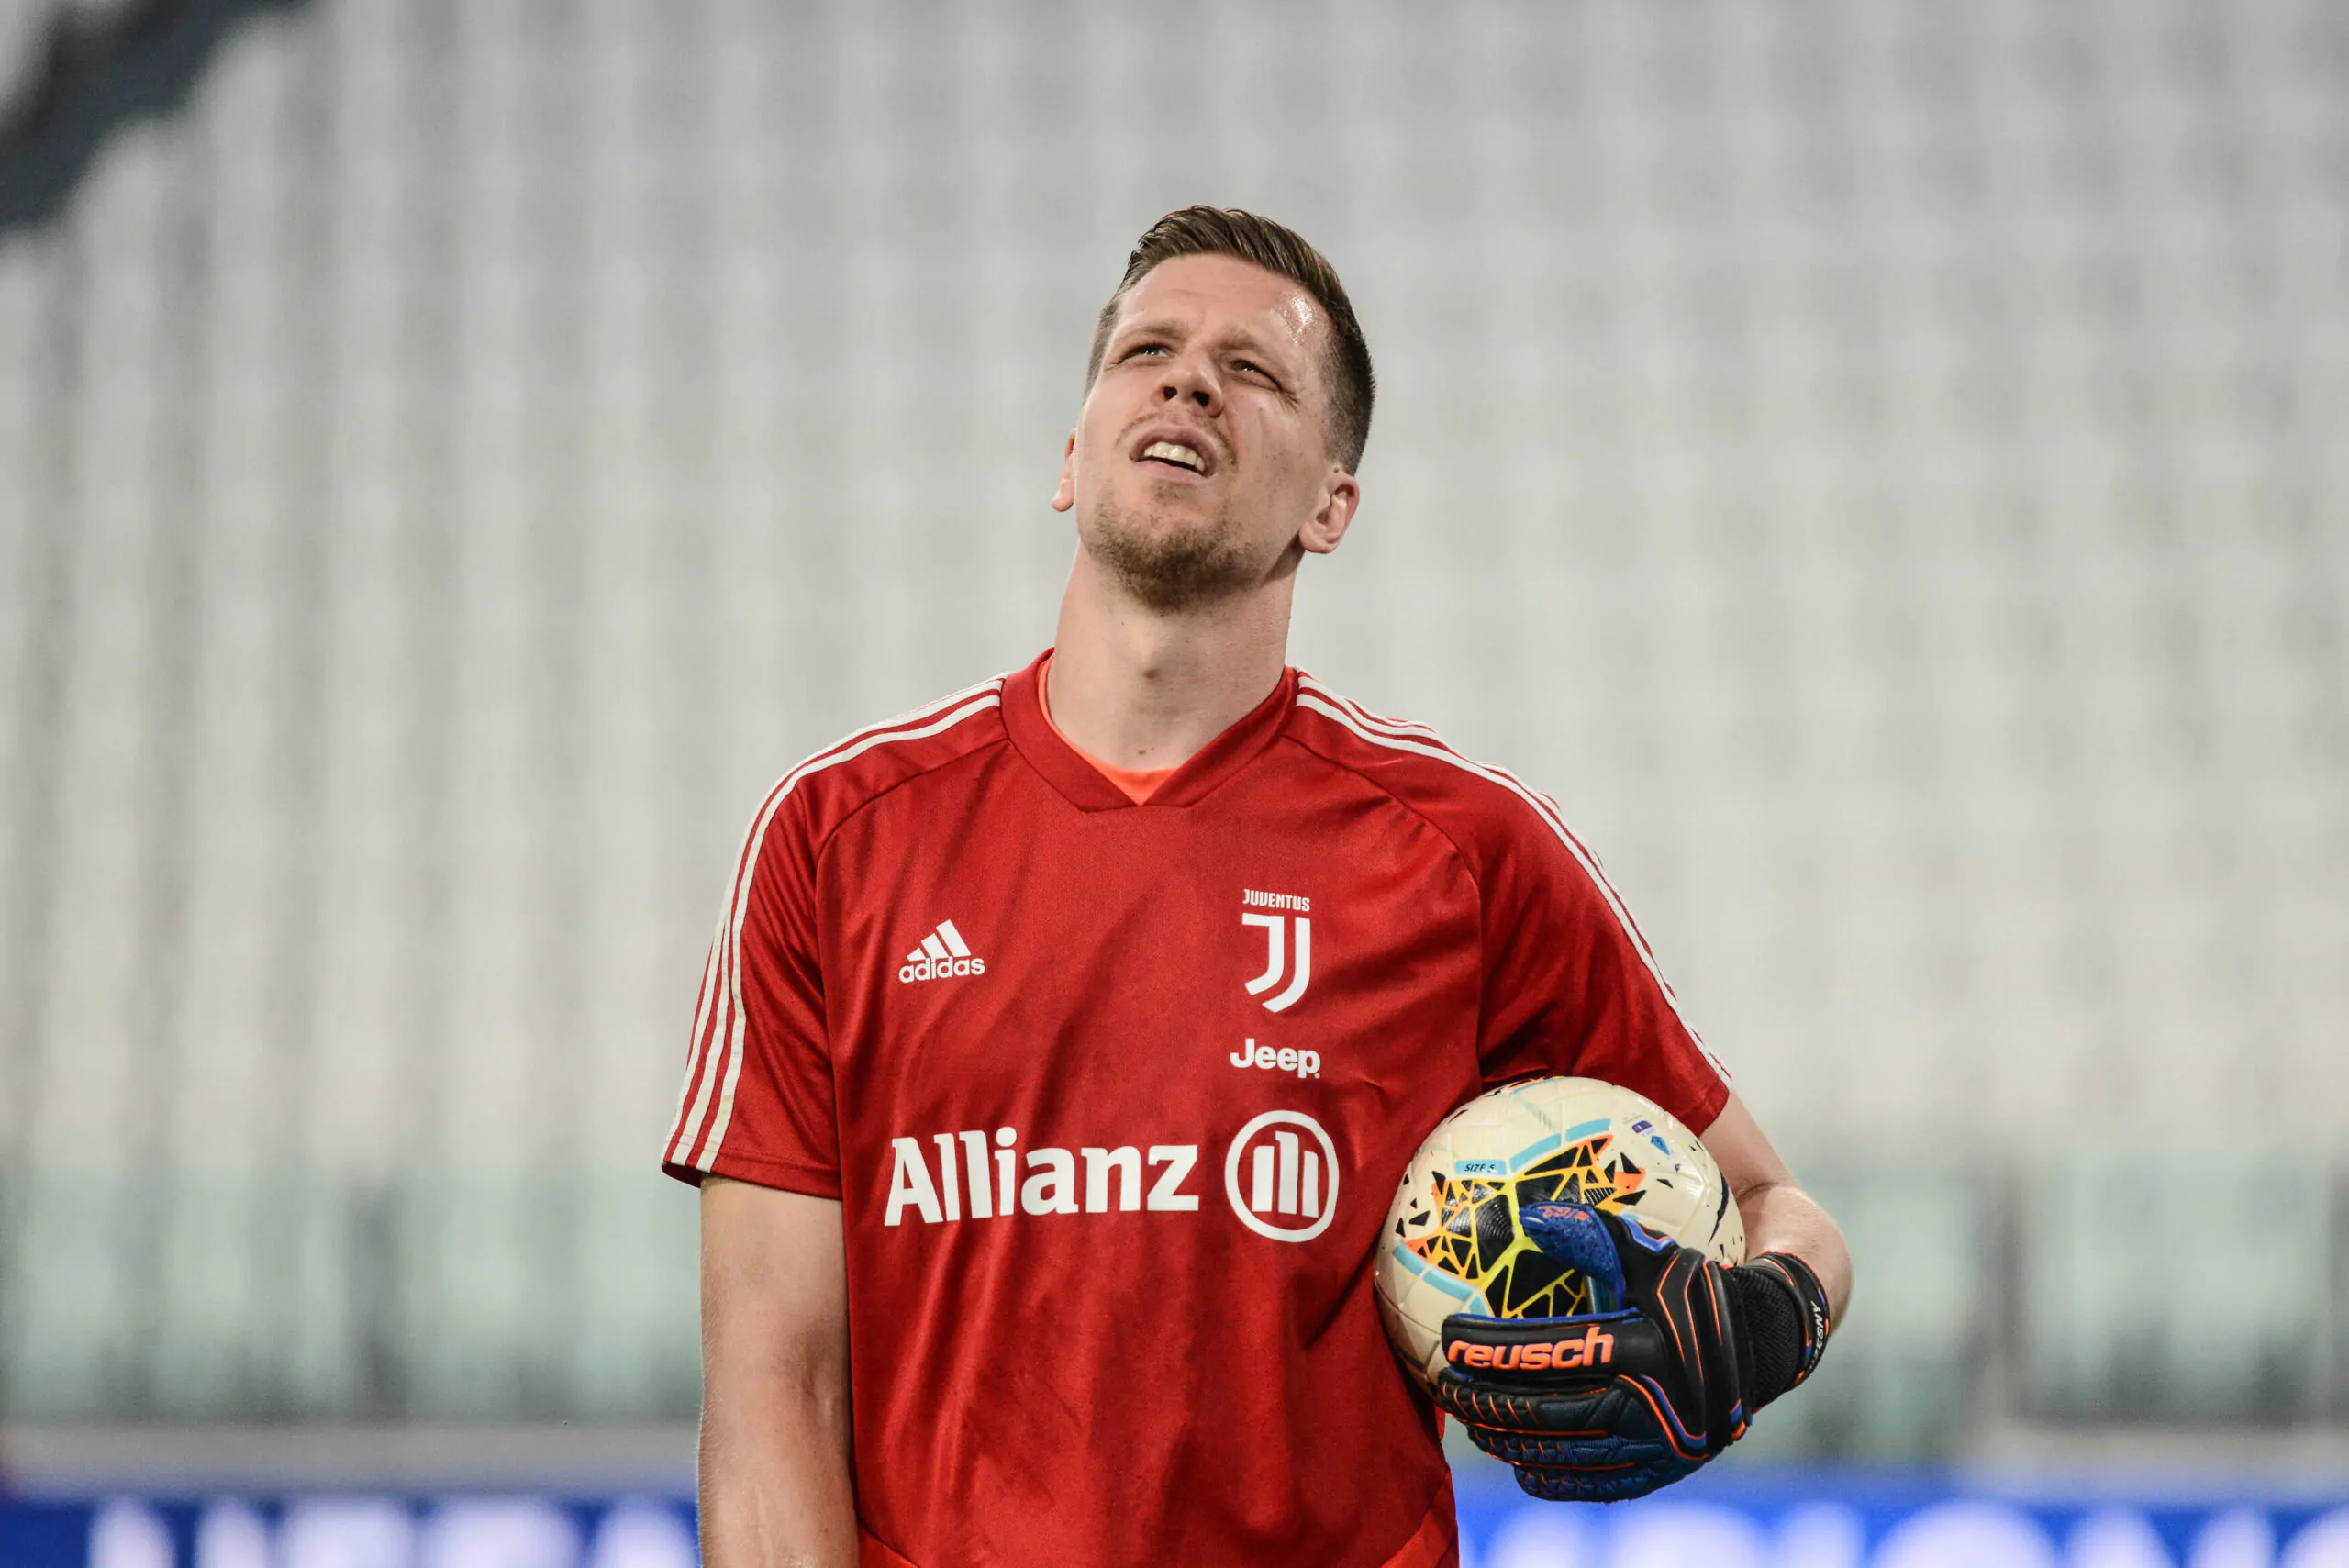 L’ex Inter difende Szczesny: “Critiche eccessive, ha panchinato Buffon”